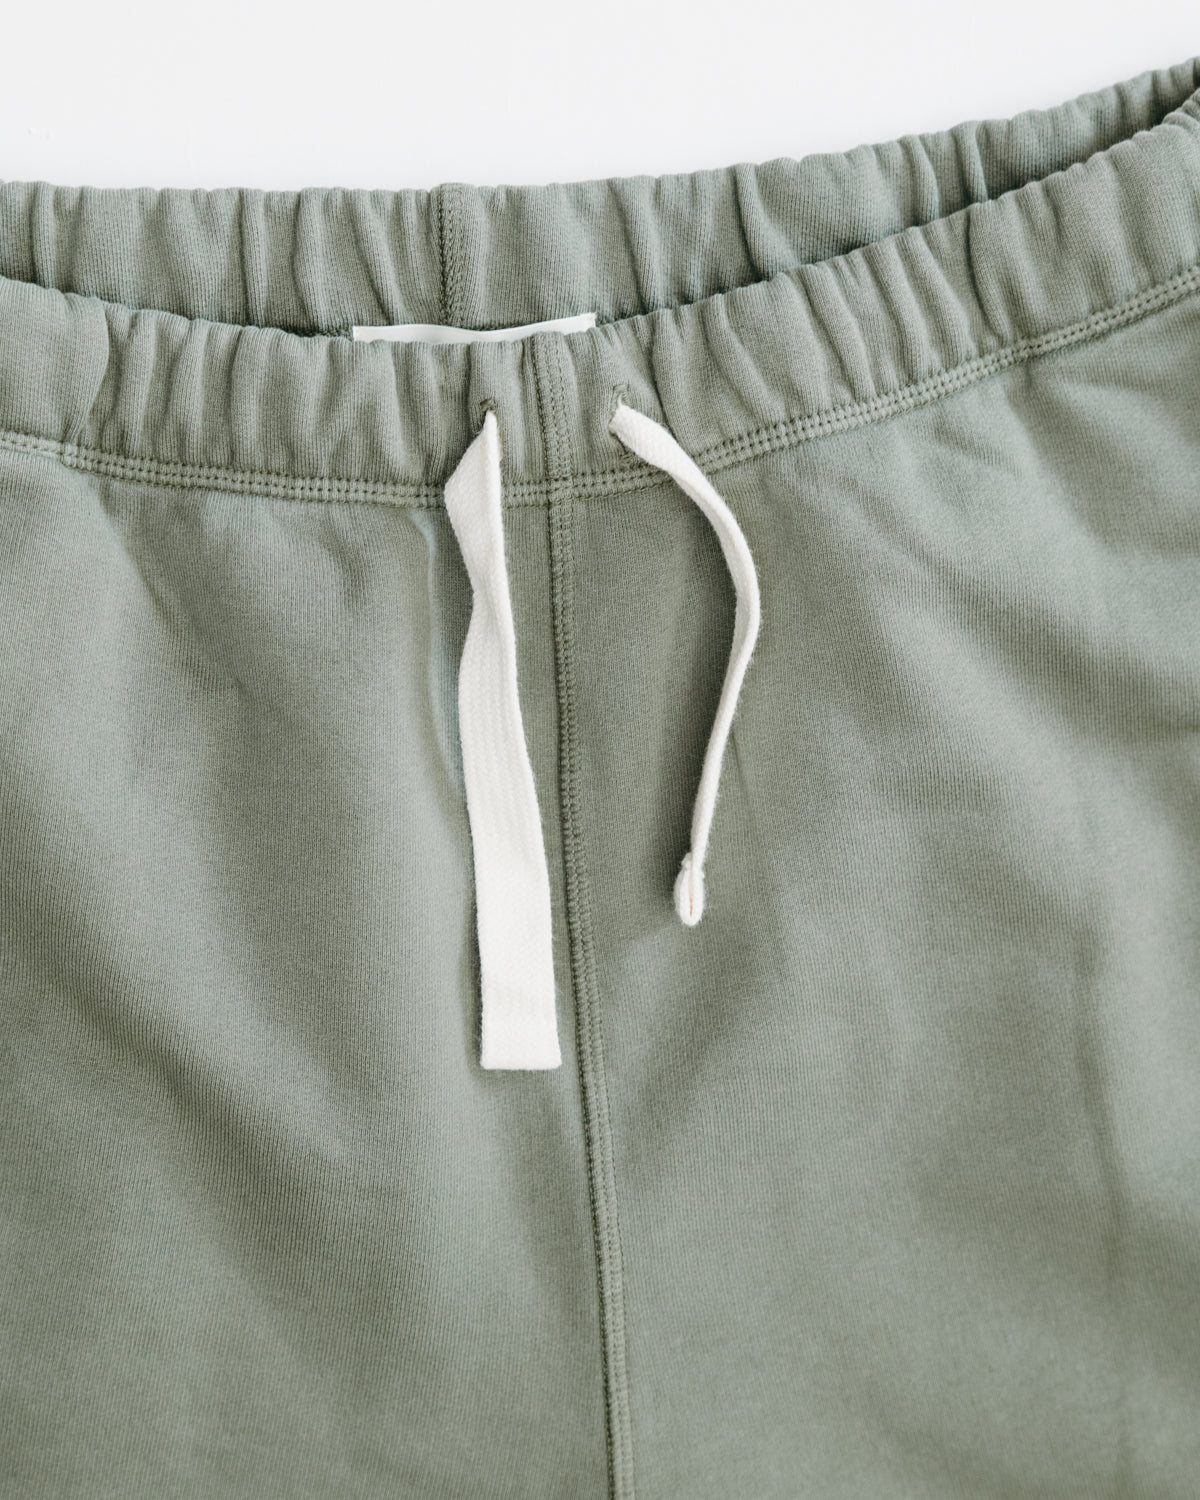 New Life Vintage : 10KG Vintage Branded Track Pants/Sweatpants